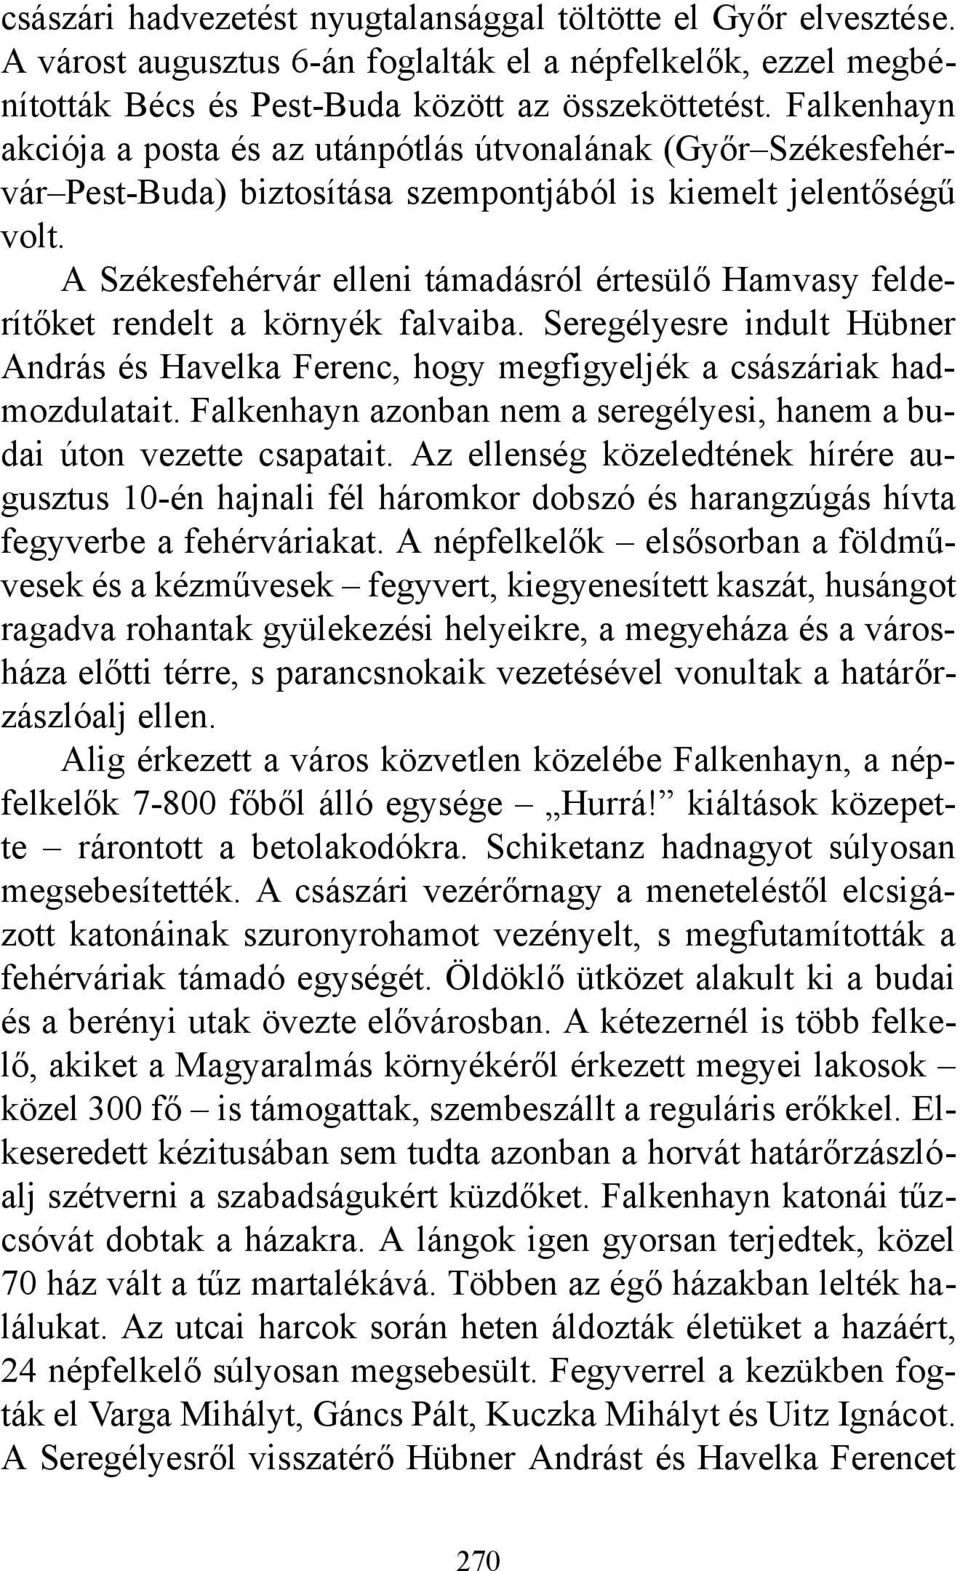 A Székesfehérvár elleni támadásról értesülő Hamvasy felderítőket rendelt a környék falvaiba. Seregélyesre indult Hübner András és Havelka Ferenc, hogy megfigyeljék a császáriak hadmozdulatait.